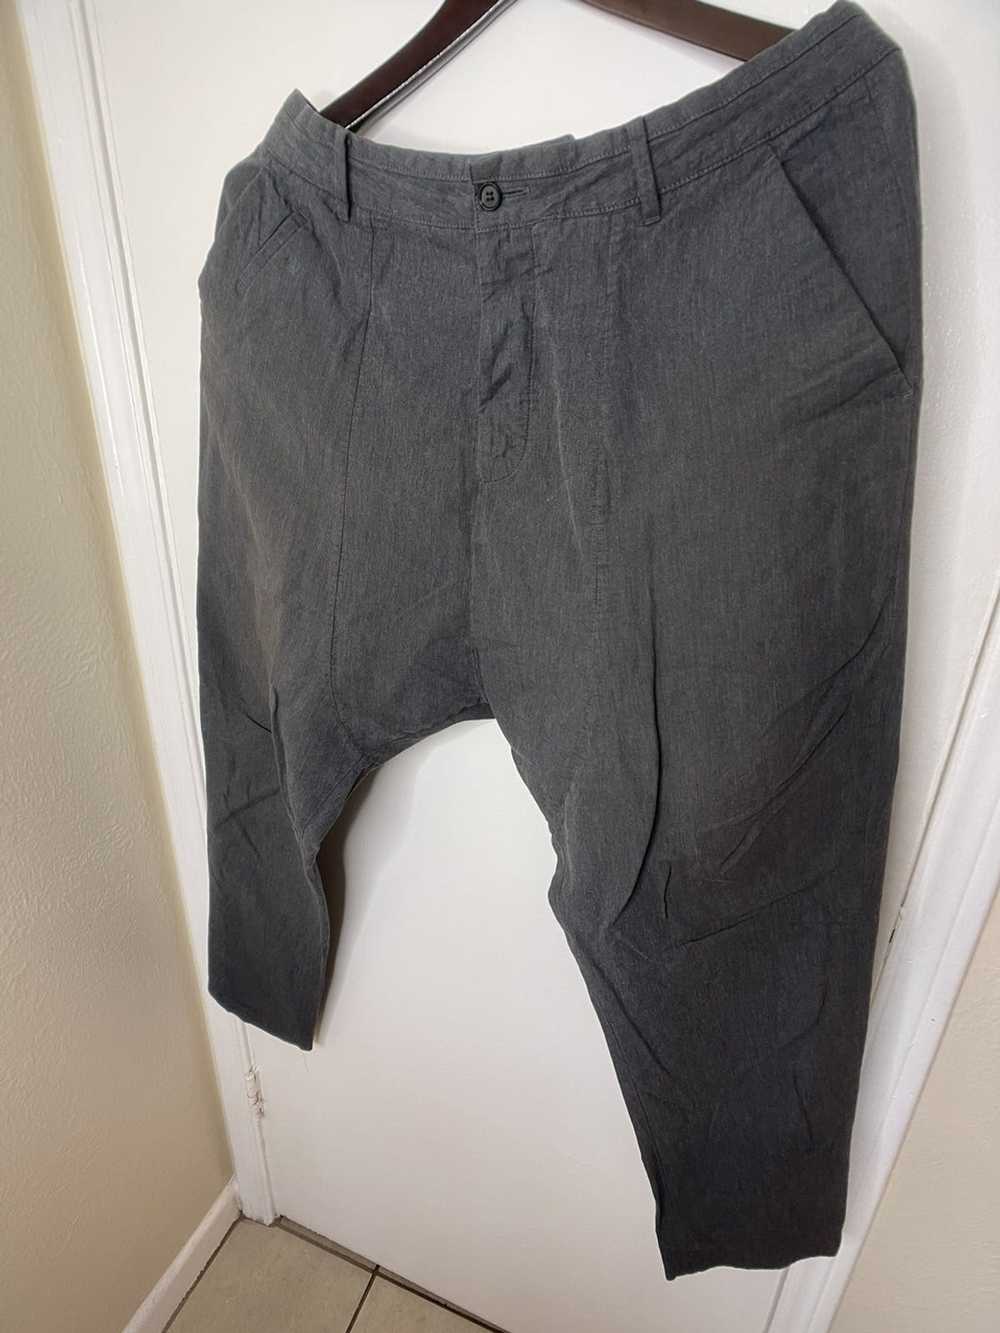 Allsaints Harem cut trousers (pants) - image 2